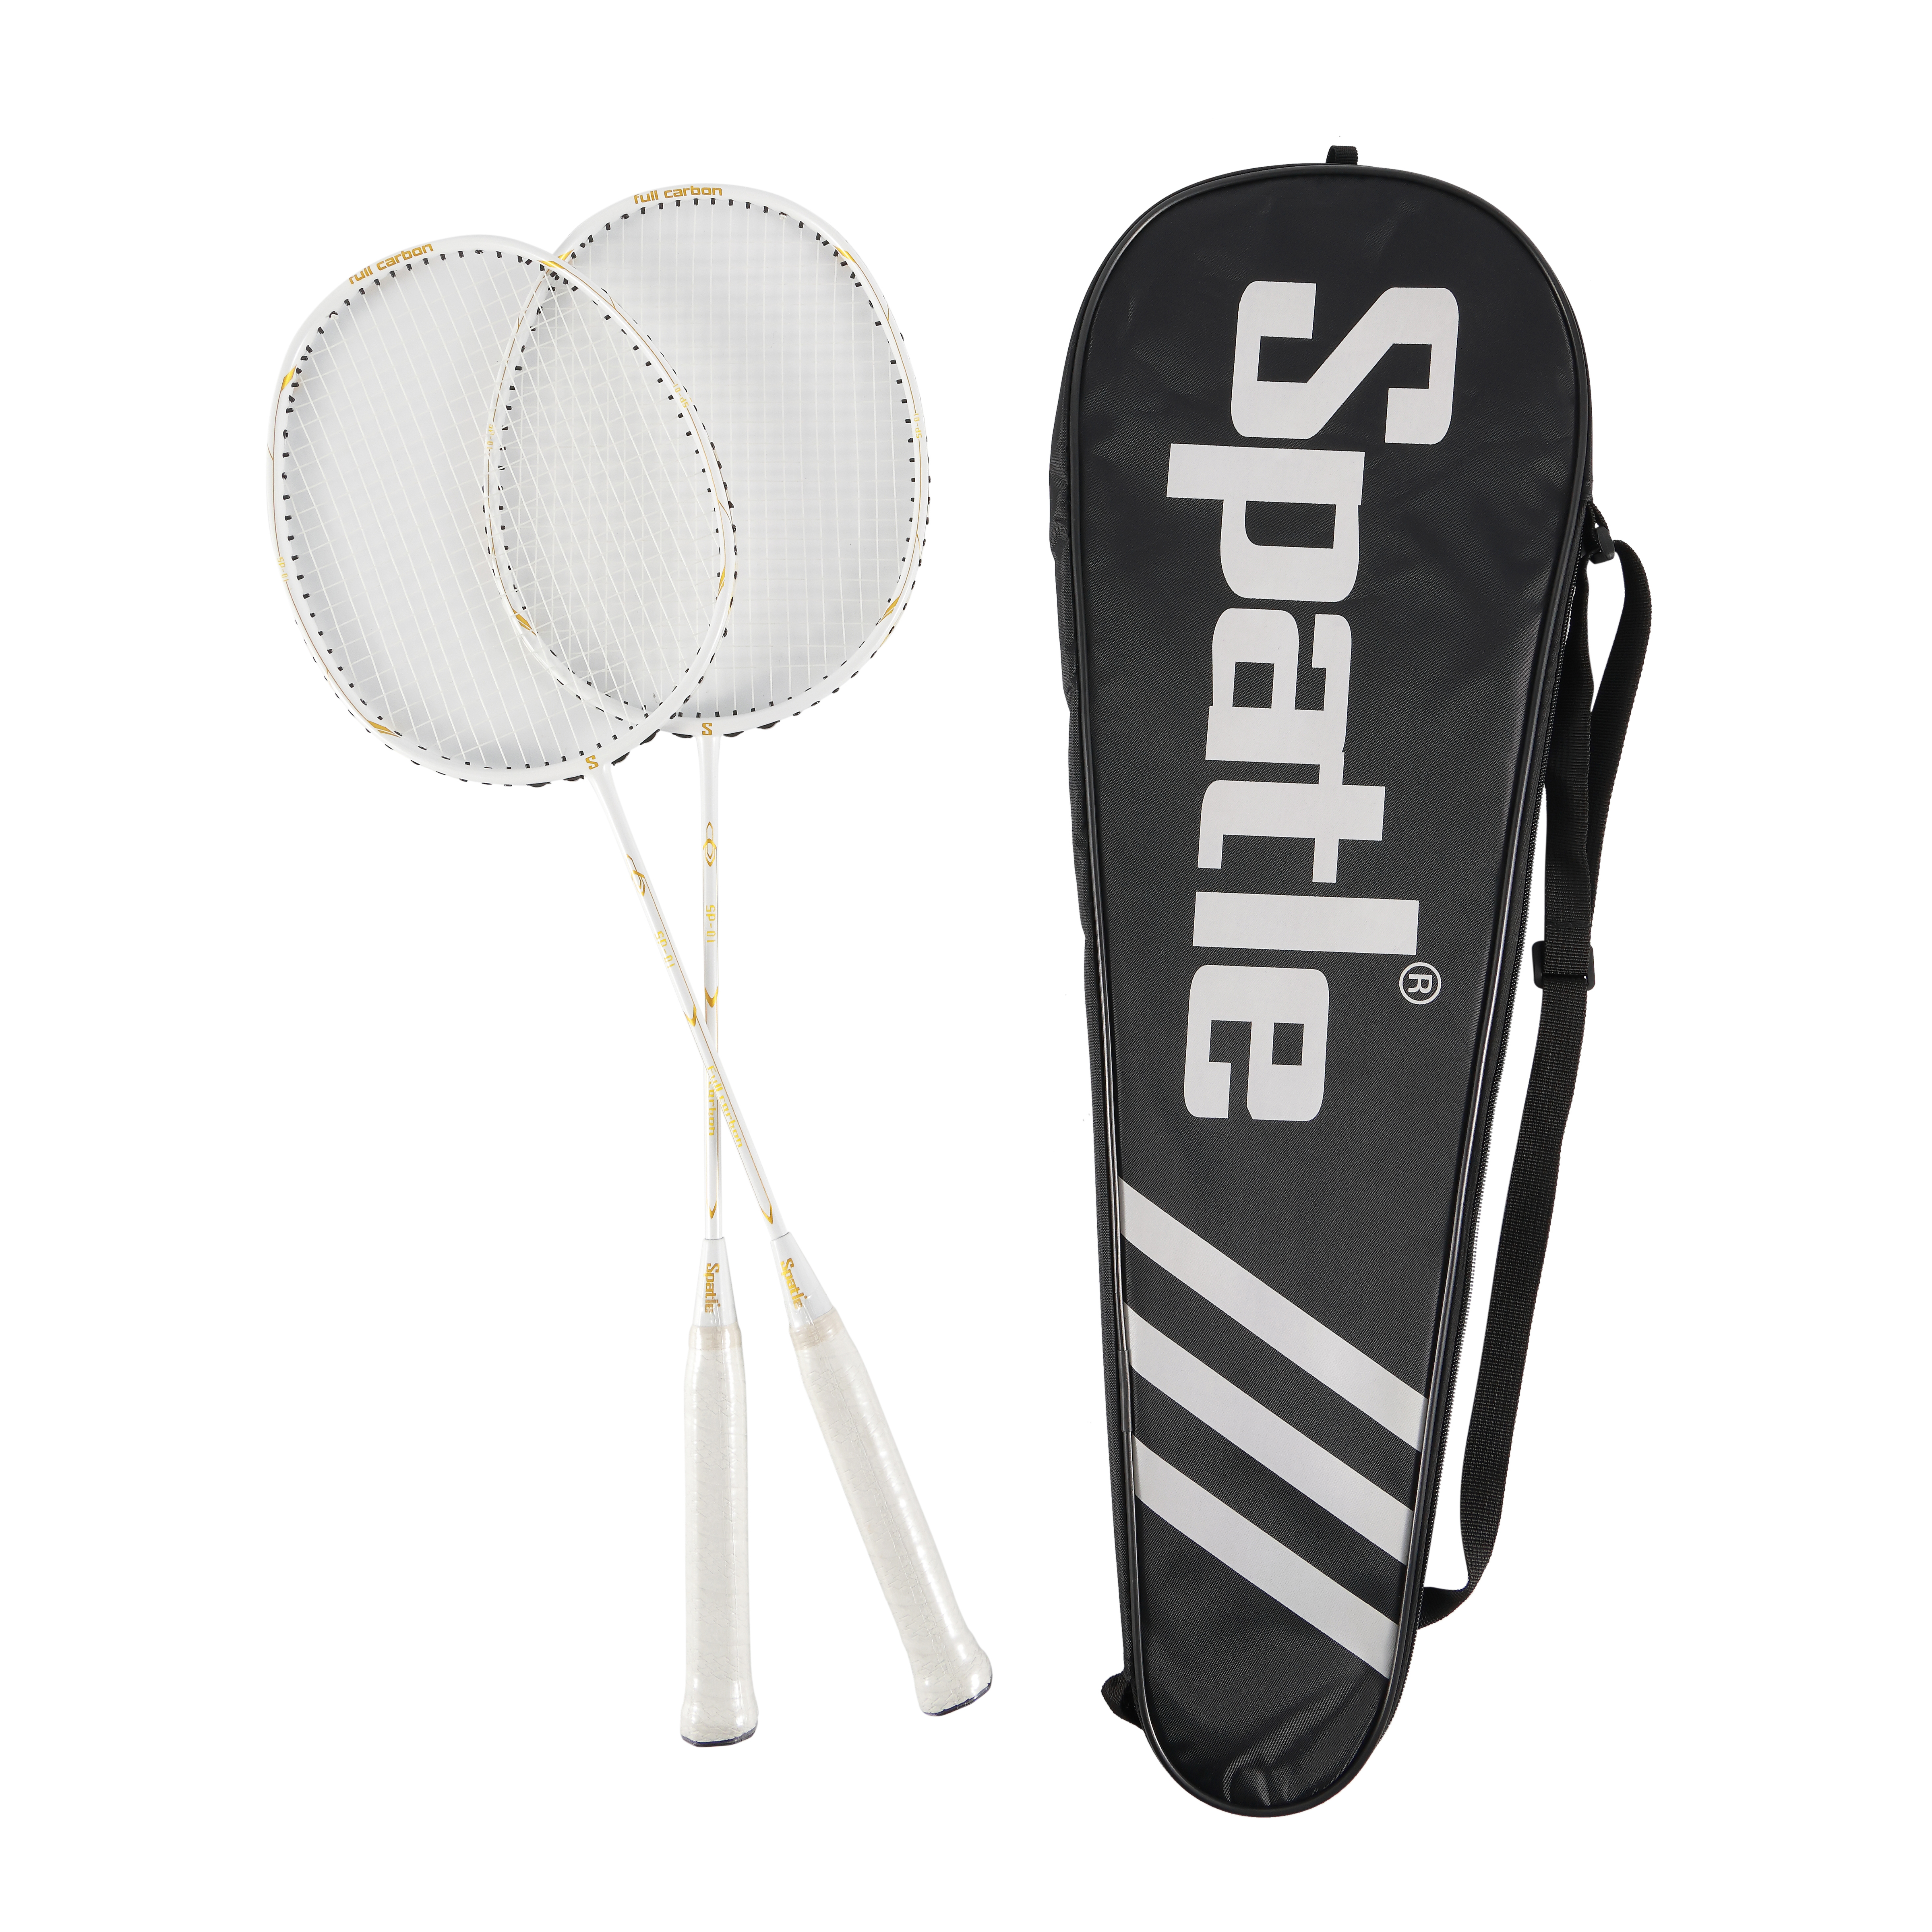 Auswahl des richtigen Badmintonschlägers für Anfänger